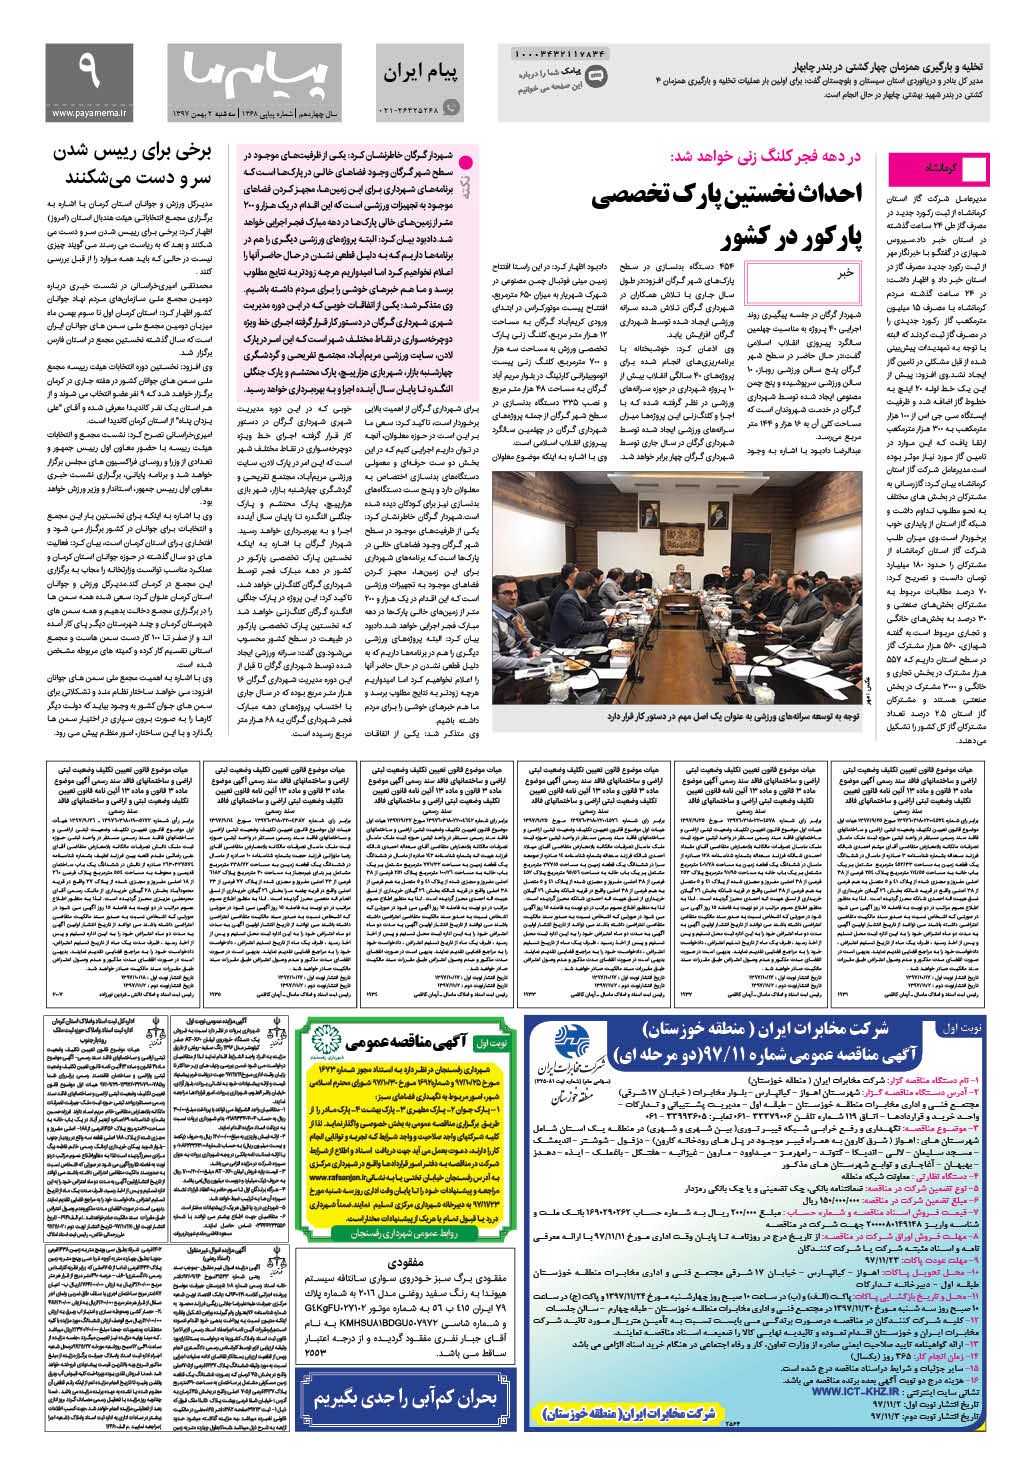 صفحه پیام ایران شماره 1368 روزنامه پیام ما